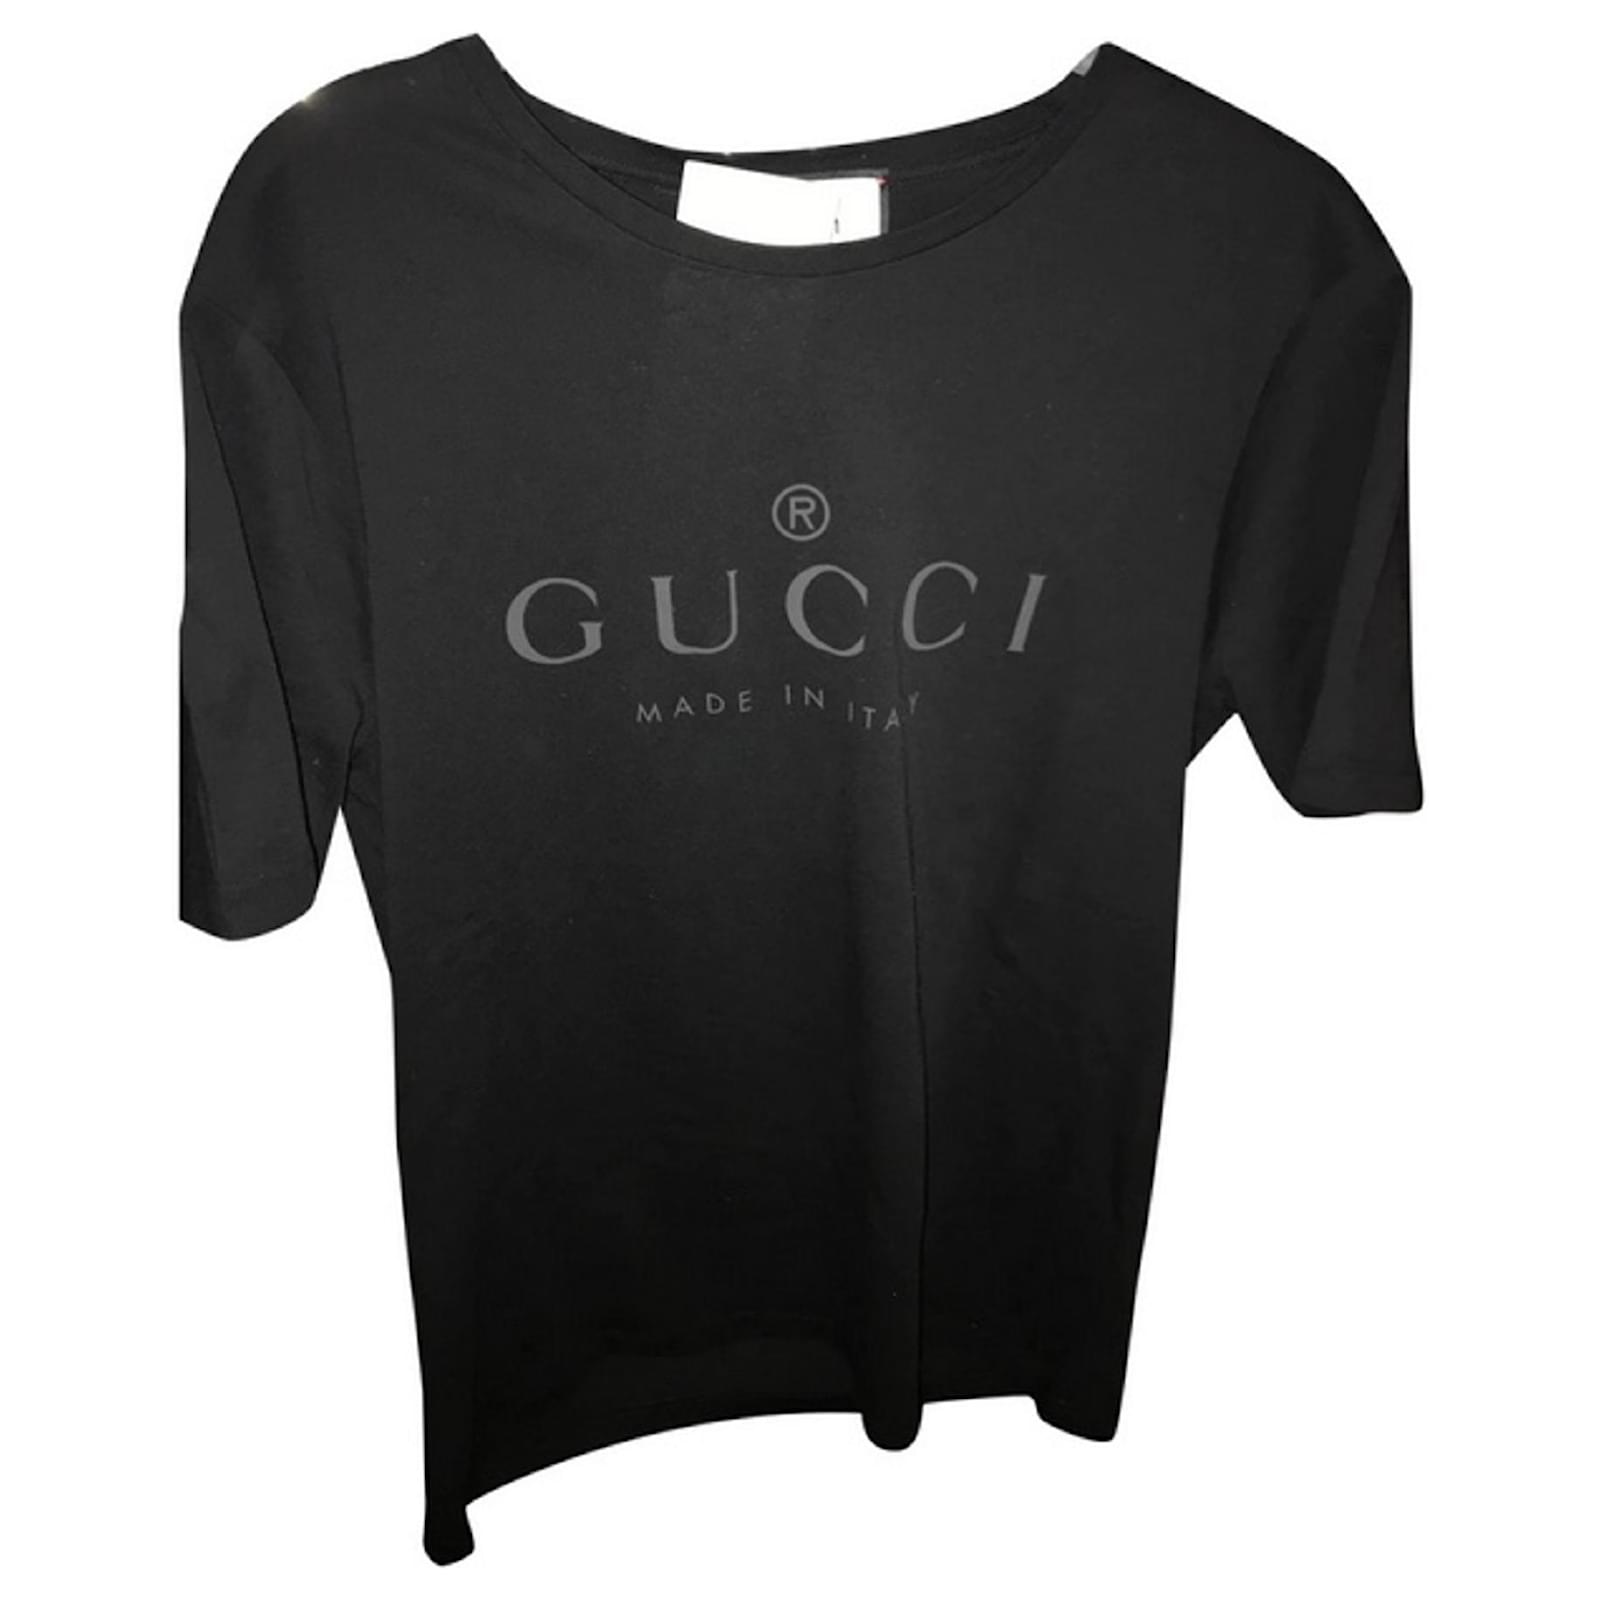 gucci tshirt black